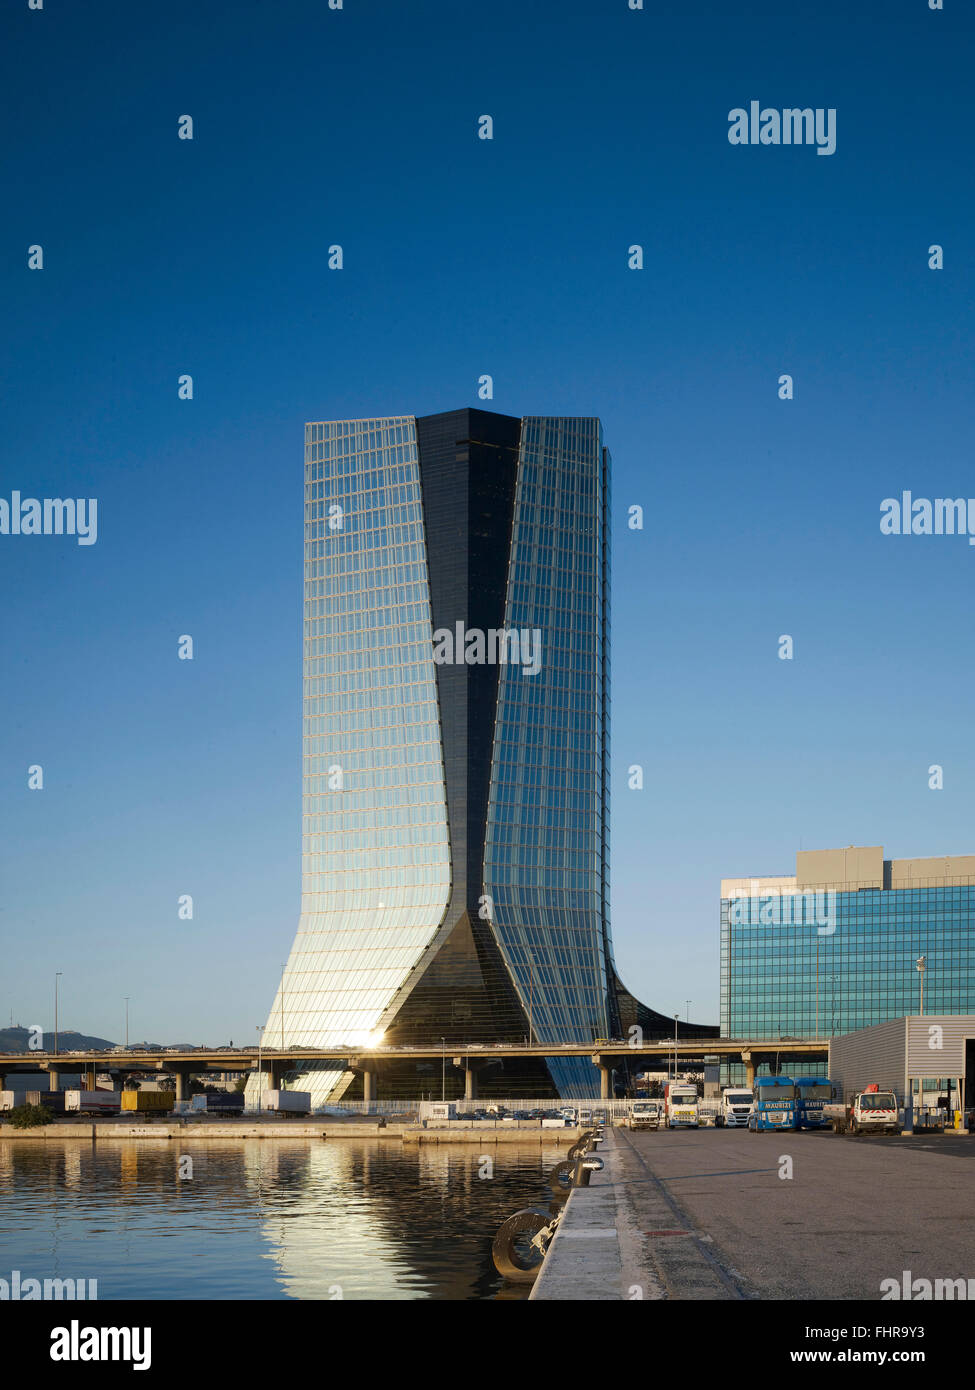 Afficher le long de Quay en direction des gratte-ciel. CMA/CMG Office Tower, Marseille, France. Architecte : Zaha Hadid Architects, 2010. Banque D'Images